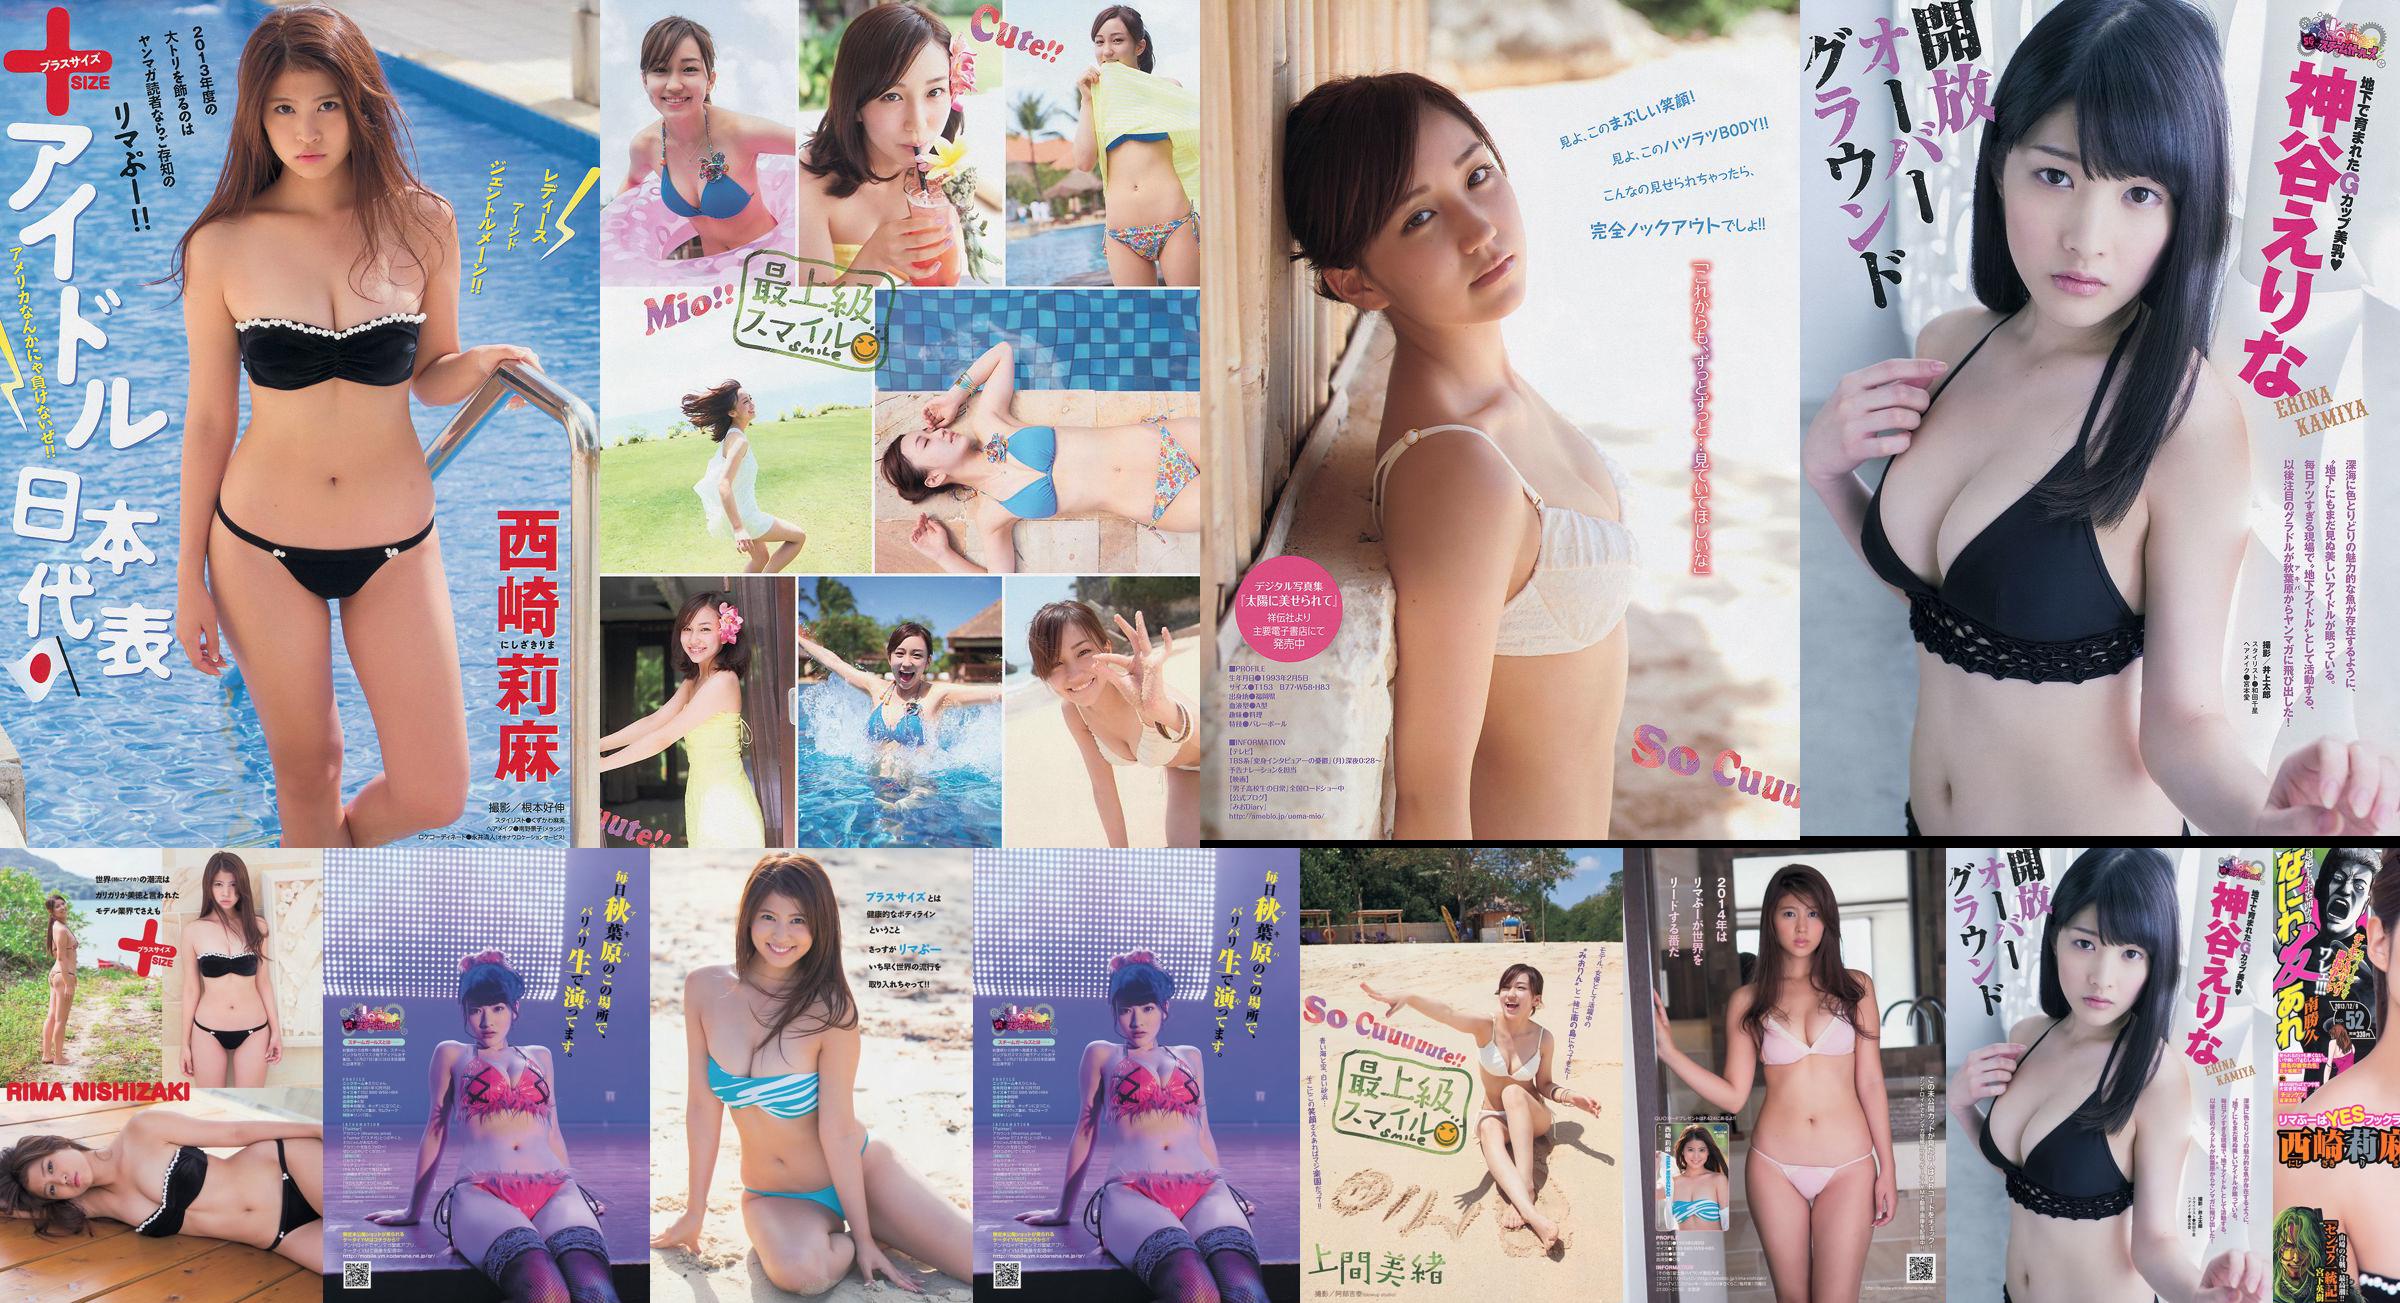 [นิตยสาร Young] Rima Nishizaki Mio Uema Erina Kamiya 2013 No.52 Photo Moshi No.97894b หน้า 3